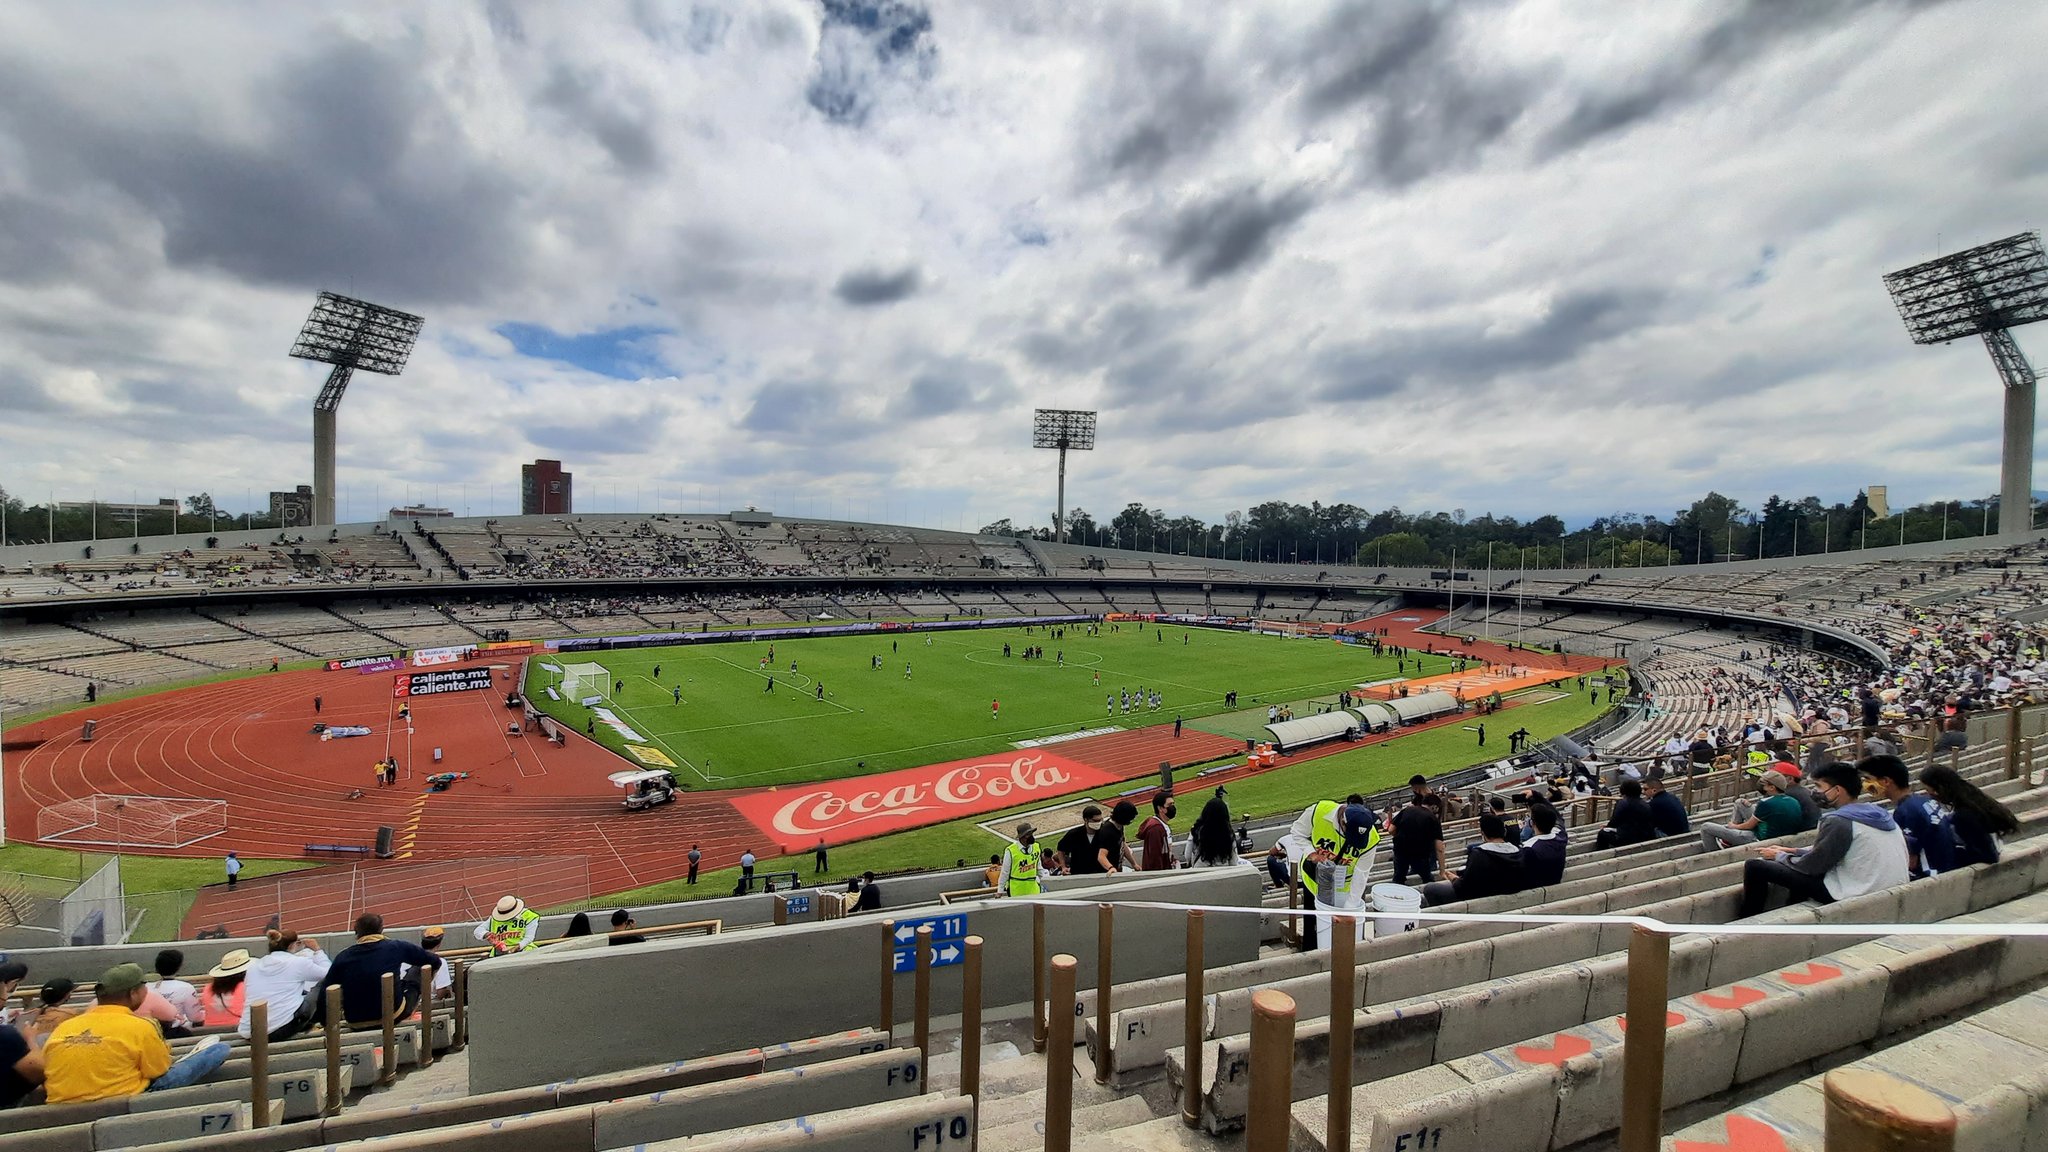 El equipo de Pumas usa el estadio de la UNAM para jugar sus partidos como local (Foto: Twitter/@vicmanolete)